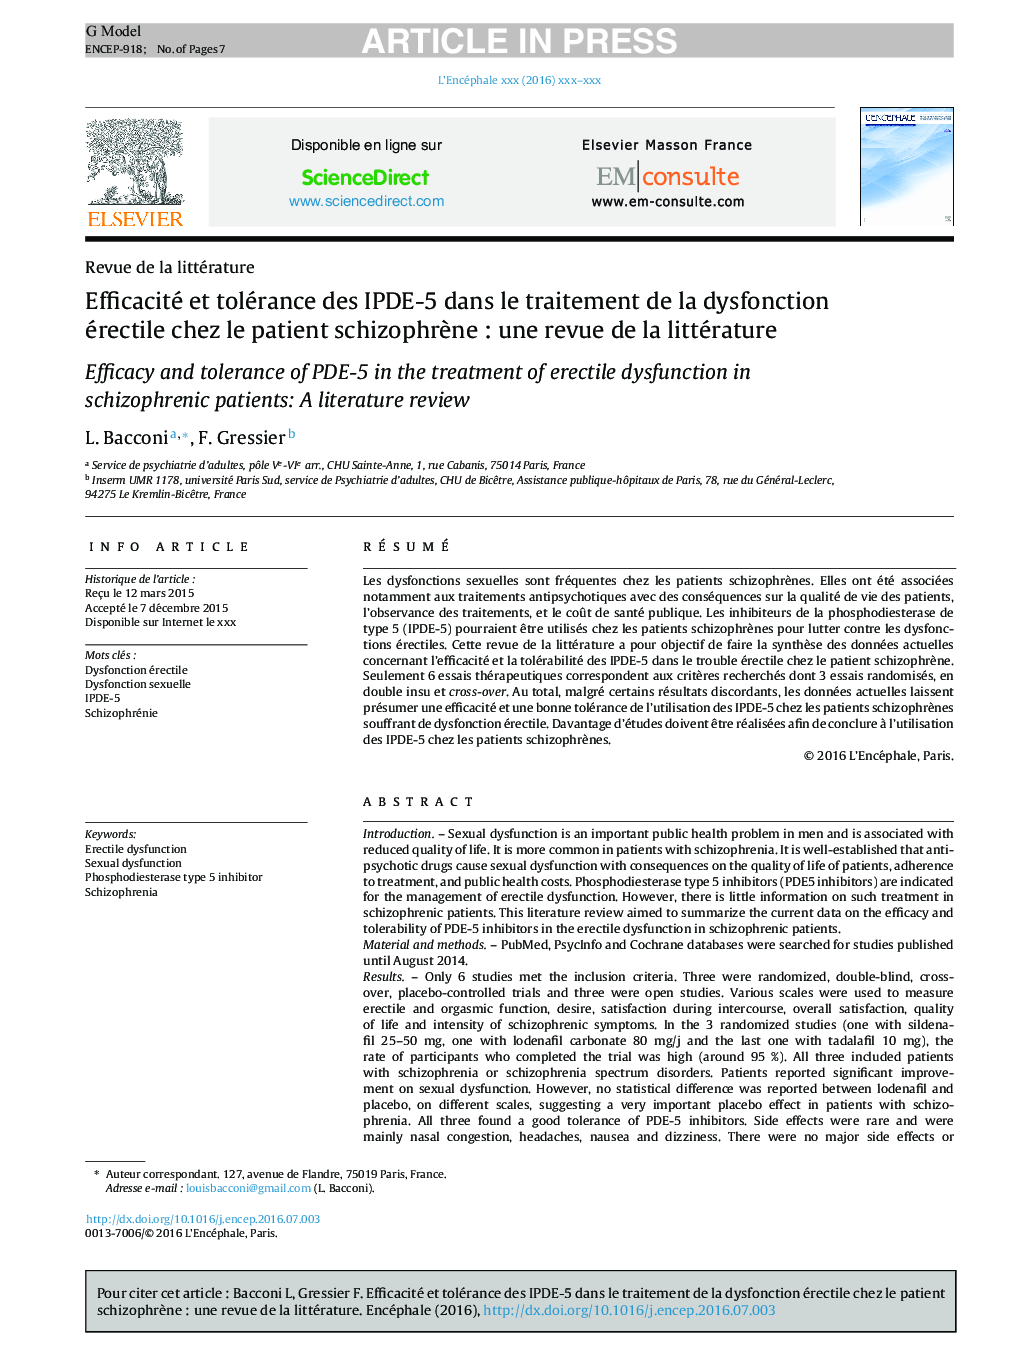 Efficacité et tolérance des IPDE-5Â dans le traitement de la dysfonction érectile chez le patient schizophrÃ¨neÂ : une revue de la littérature